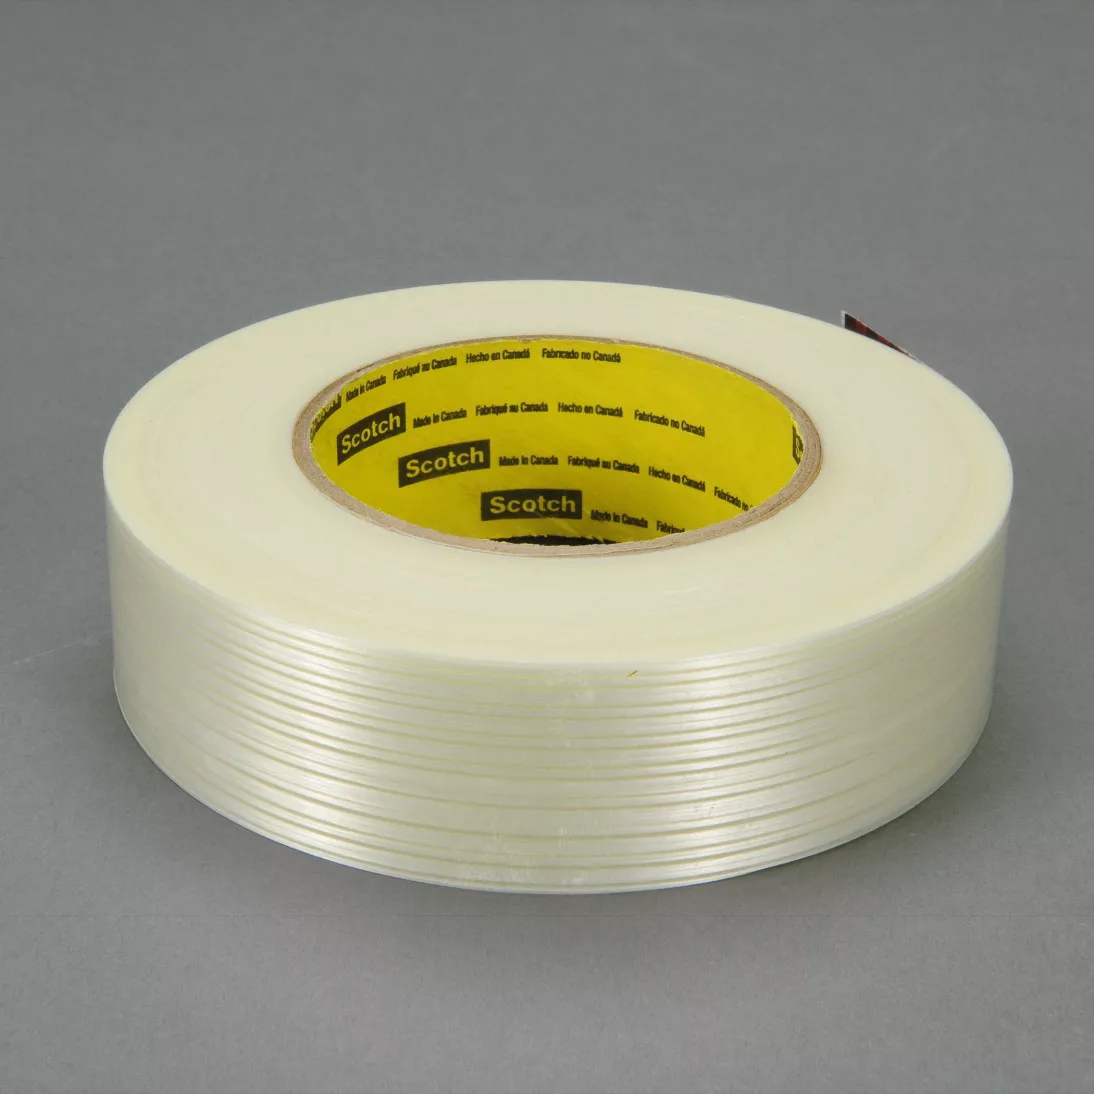 Scotch® Filament Tape 8916V, Clear, 48 mm x 110 m, 6.8 mil, 6.8 mil, 12
rolls per case